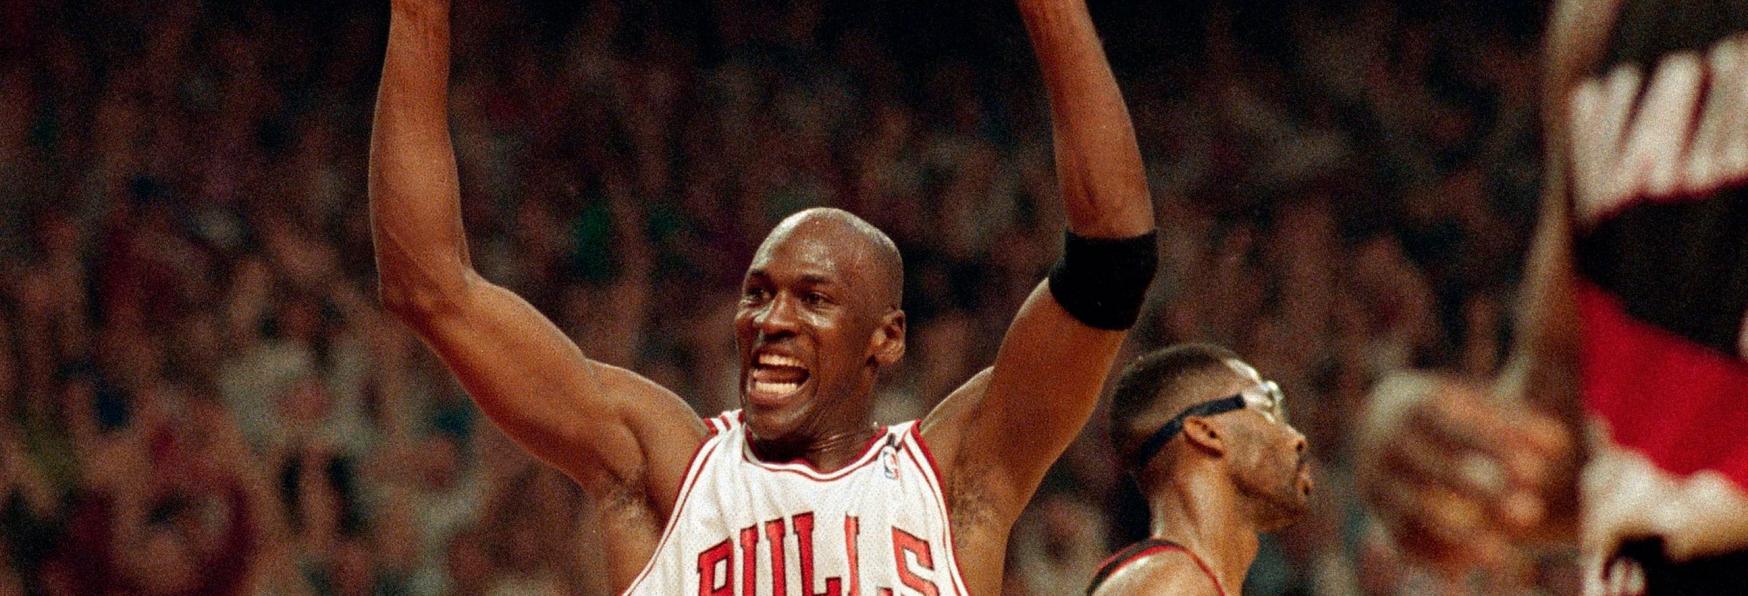 The Last Dance: la nostra Recensione sui primi 2 Episodi della nuova Miniserie Sportiva su Michael Jordan e i Bulls